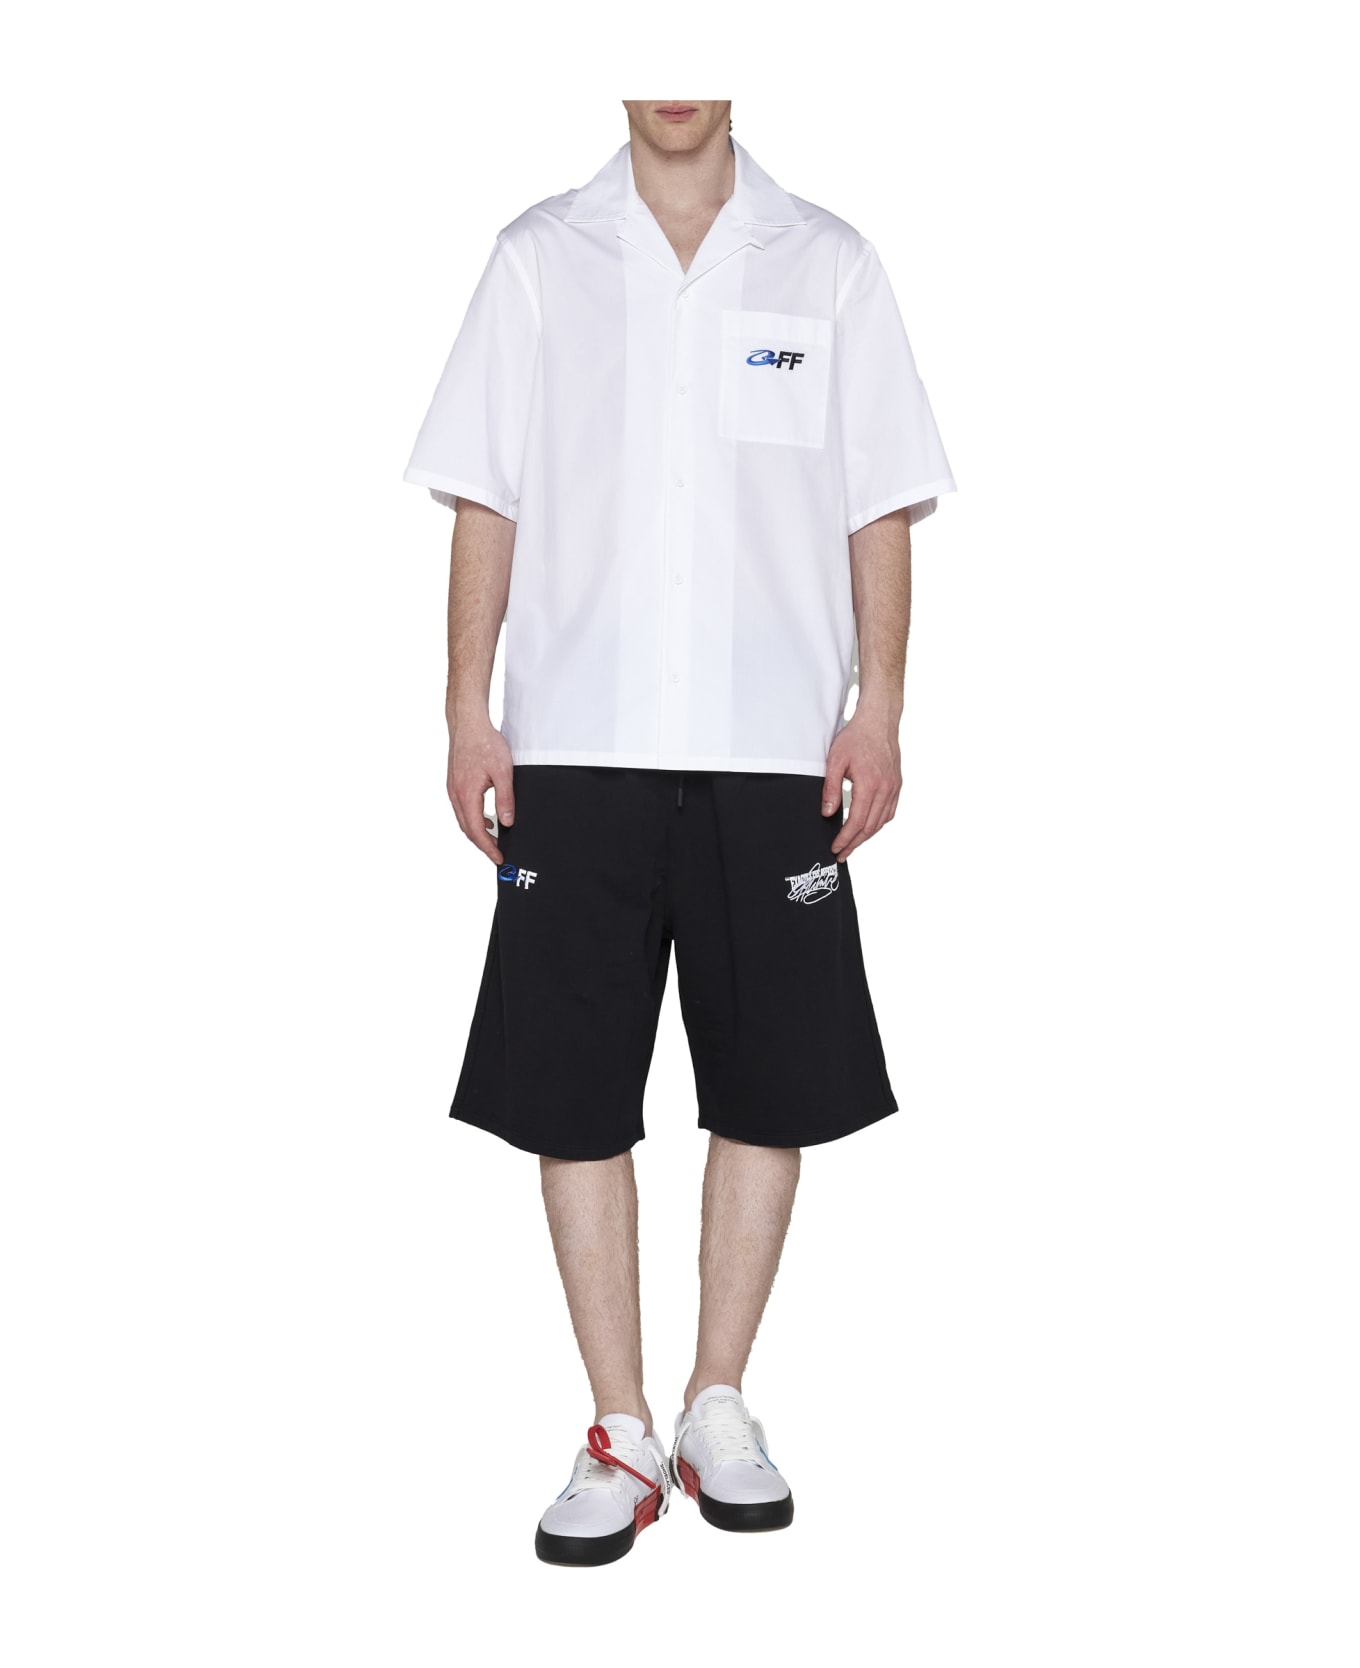 Off-White Shorts - Black ショートパンツ